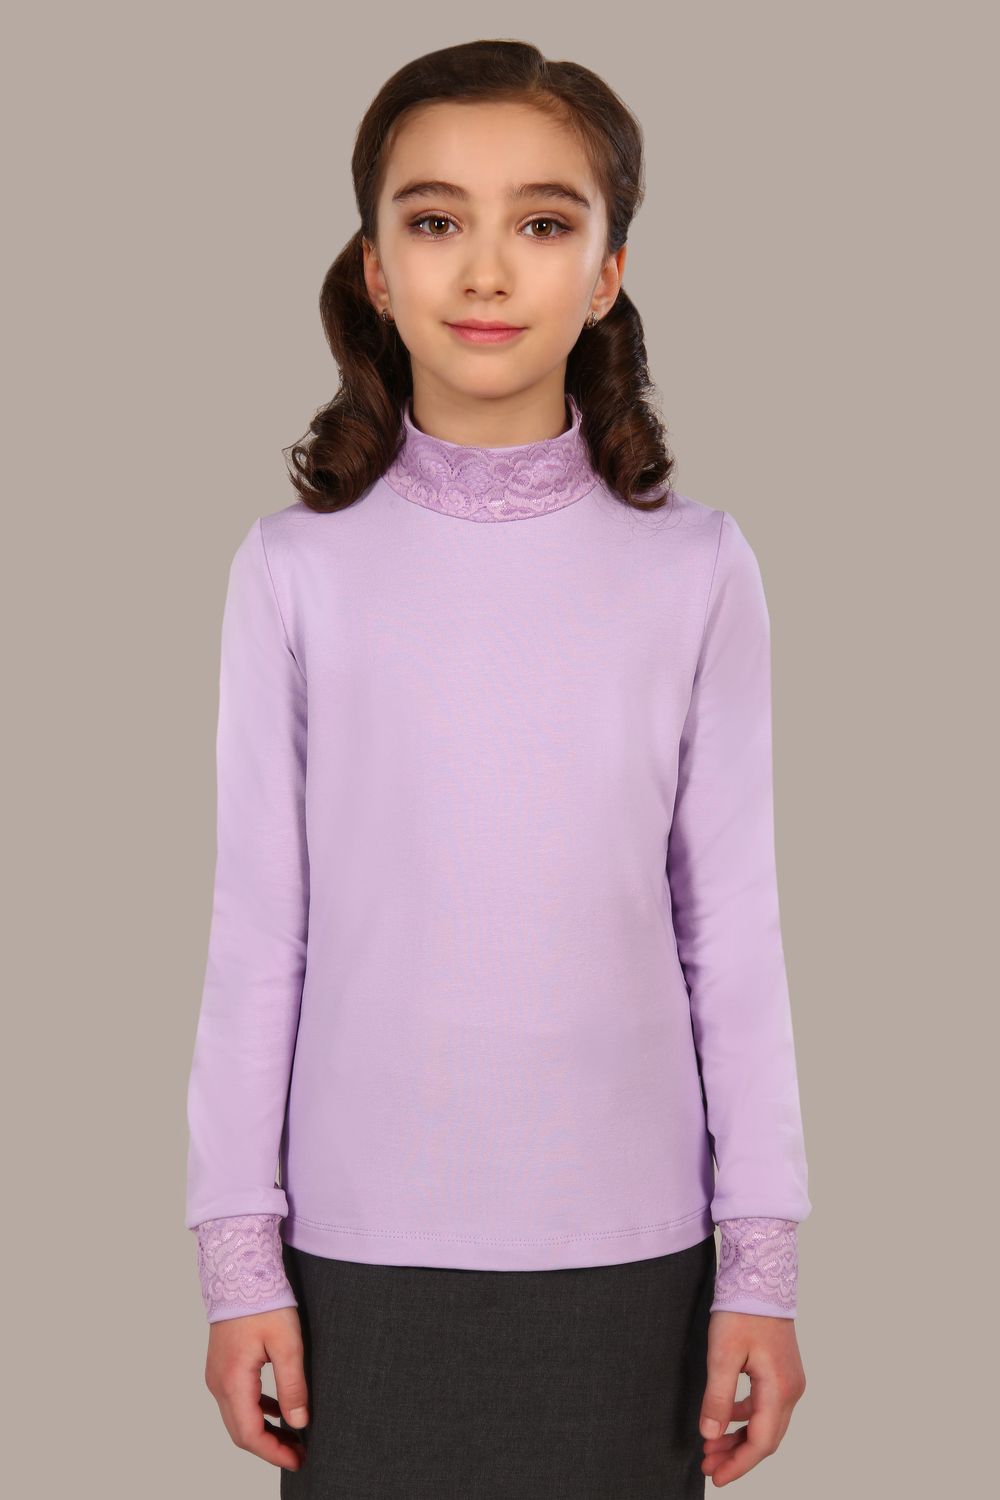 Блузка для девочки Дженифер арт. 13119 - светло-сиреневый